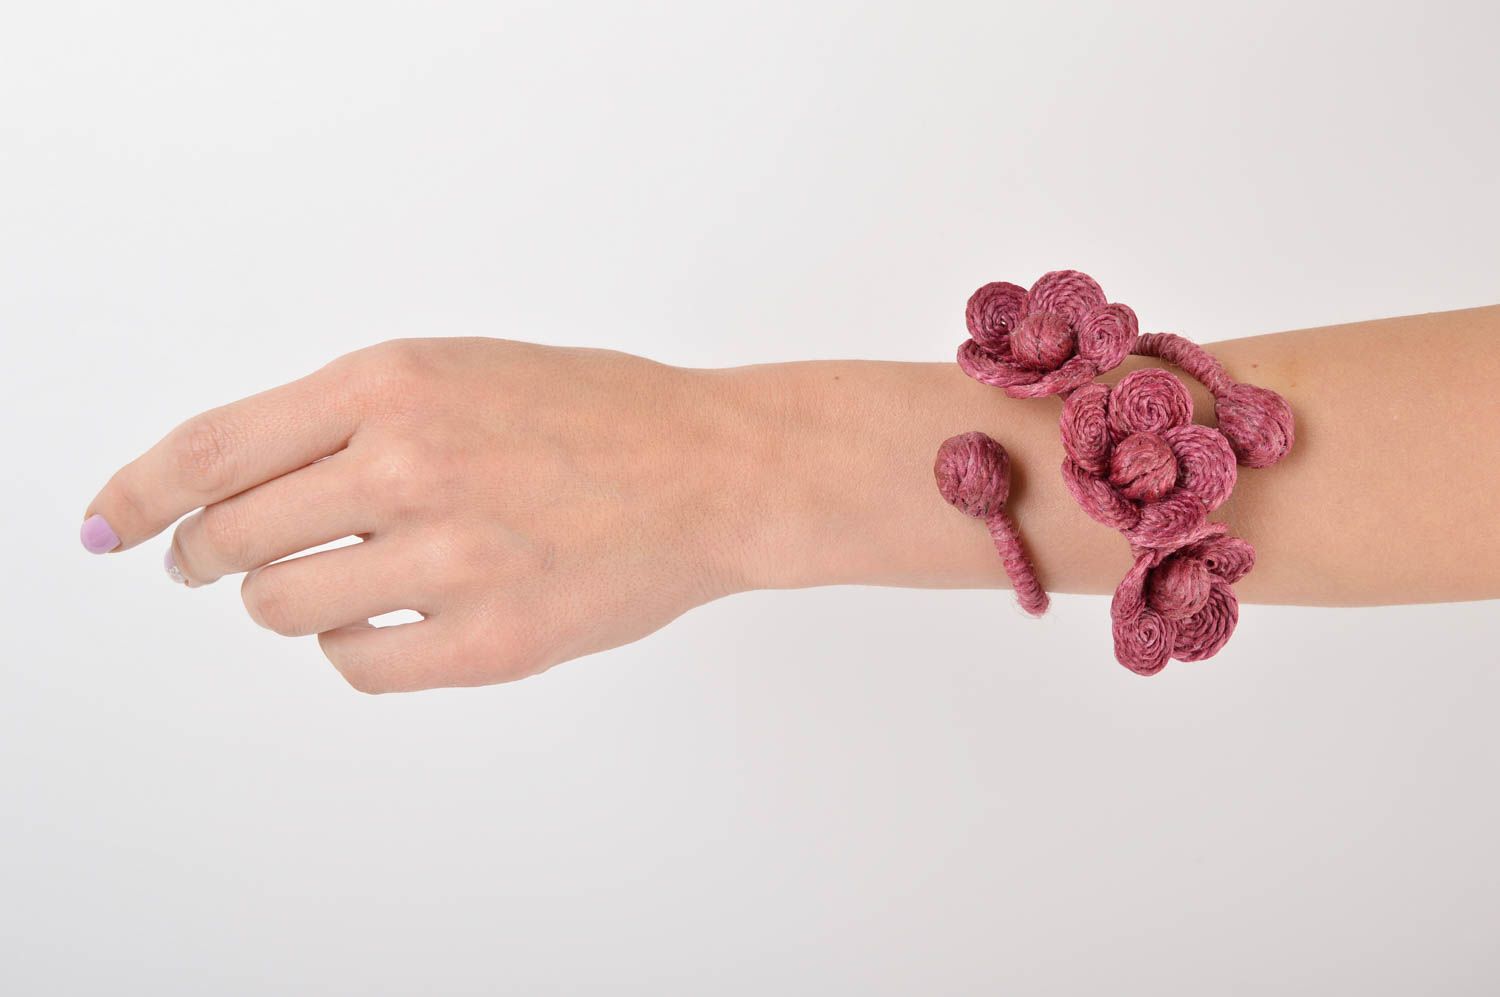 Rosa schönes grelles handmade Damen Armband Ethno Schmuck Designer Accessoire  foto 5